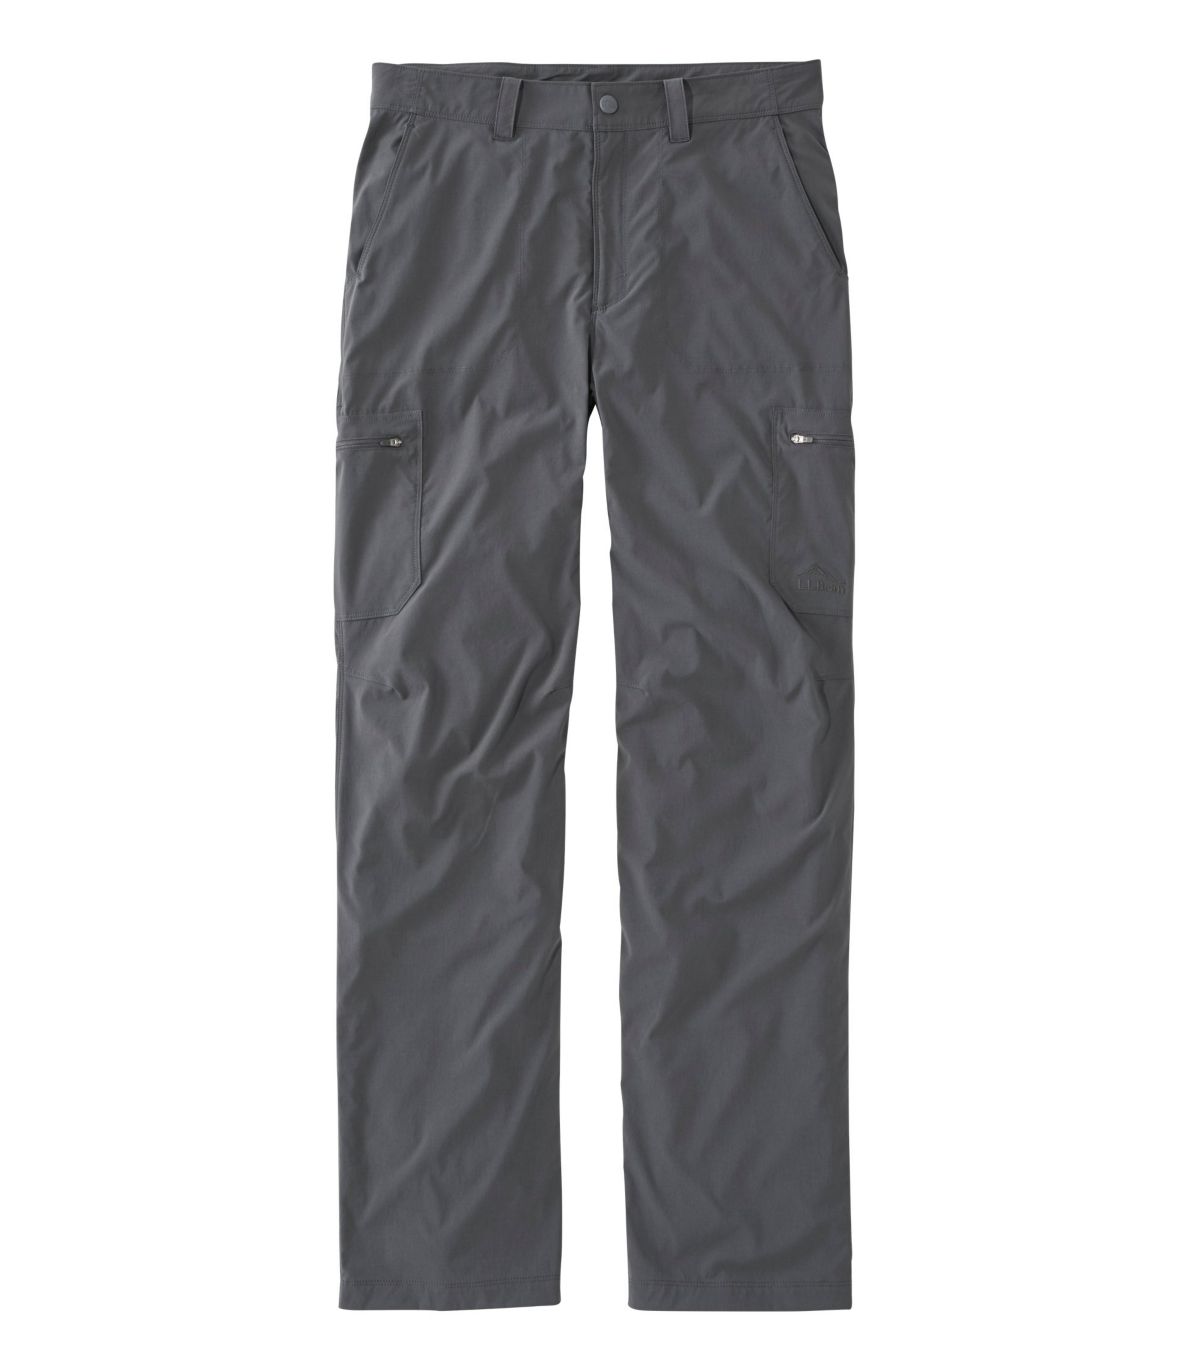 Men's Water-Resistant Cresta Hiking Pants, Natural Fit at L.L. Bean